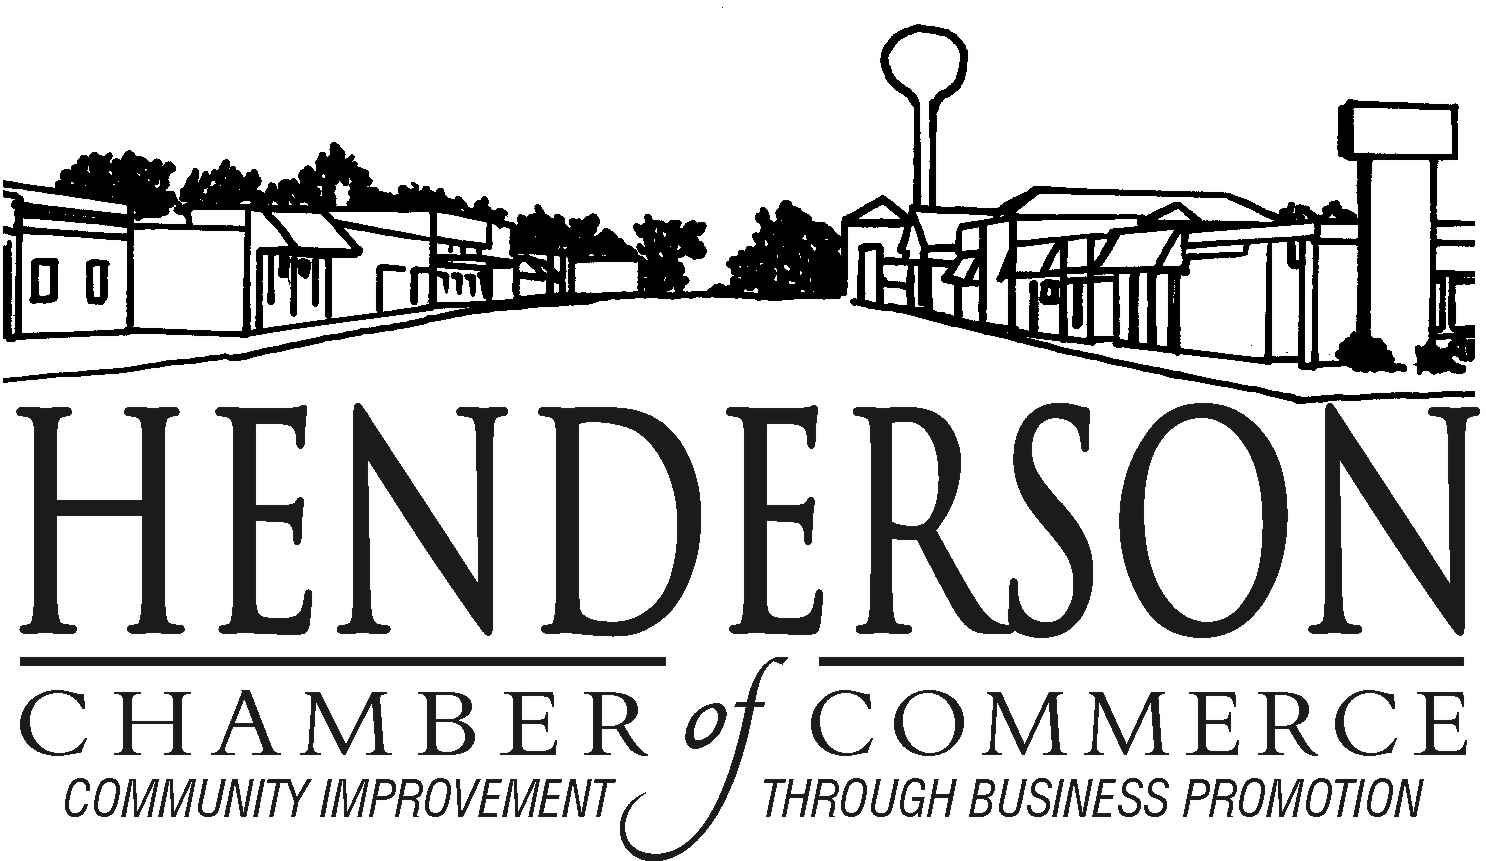 Henderson Chamber of Commerce's Logo